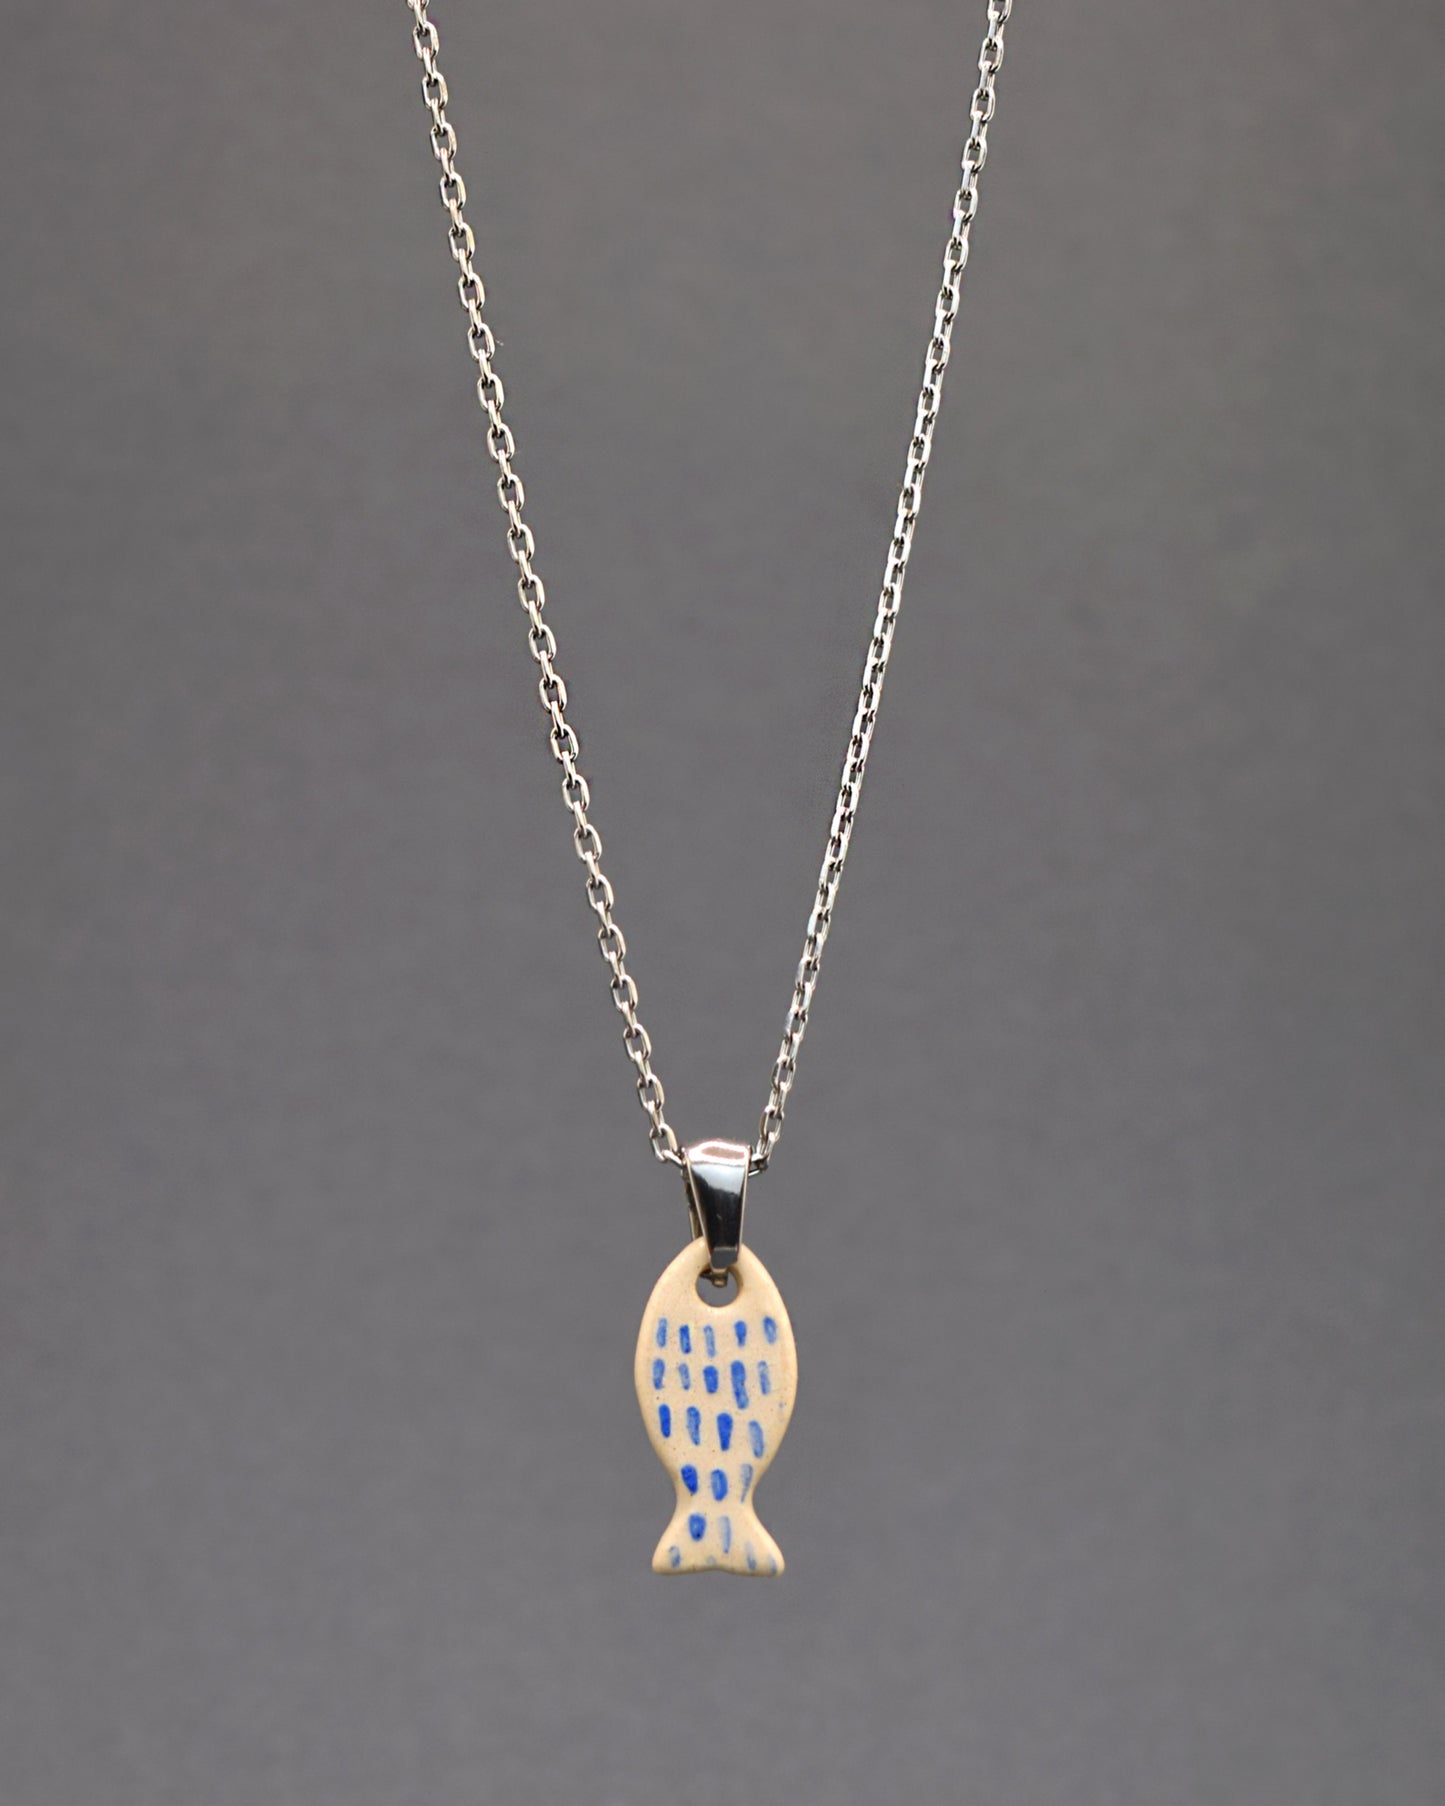  Colar em aço inoxidável com pendente de peixe em cerâmica, pintado à mão com delicadas pinceladas em azul, remetendo às escamas. Uma peça única que combina durabilidade com arte artesanal.